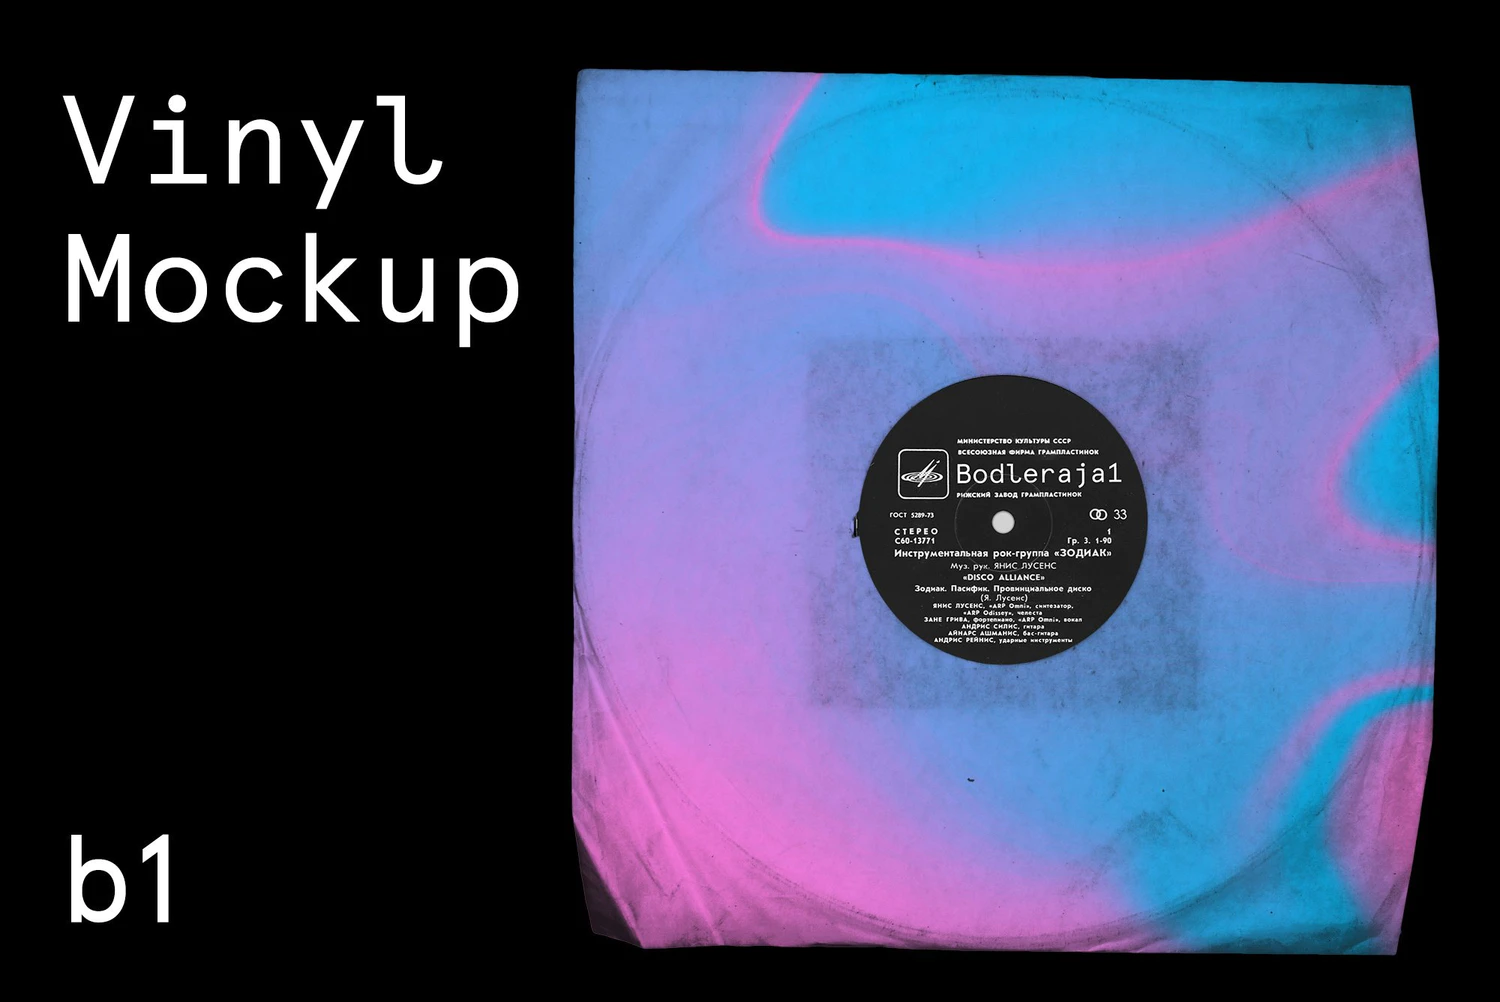 2645 潮流酷炫黑胶唱片包装纸包PSD样机素材 Vinyl Album Record Mockup